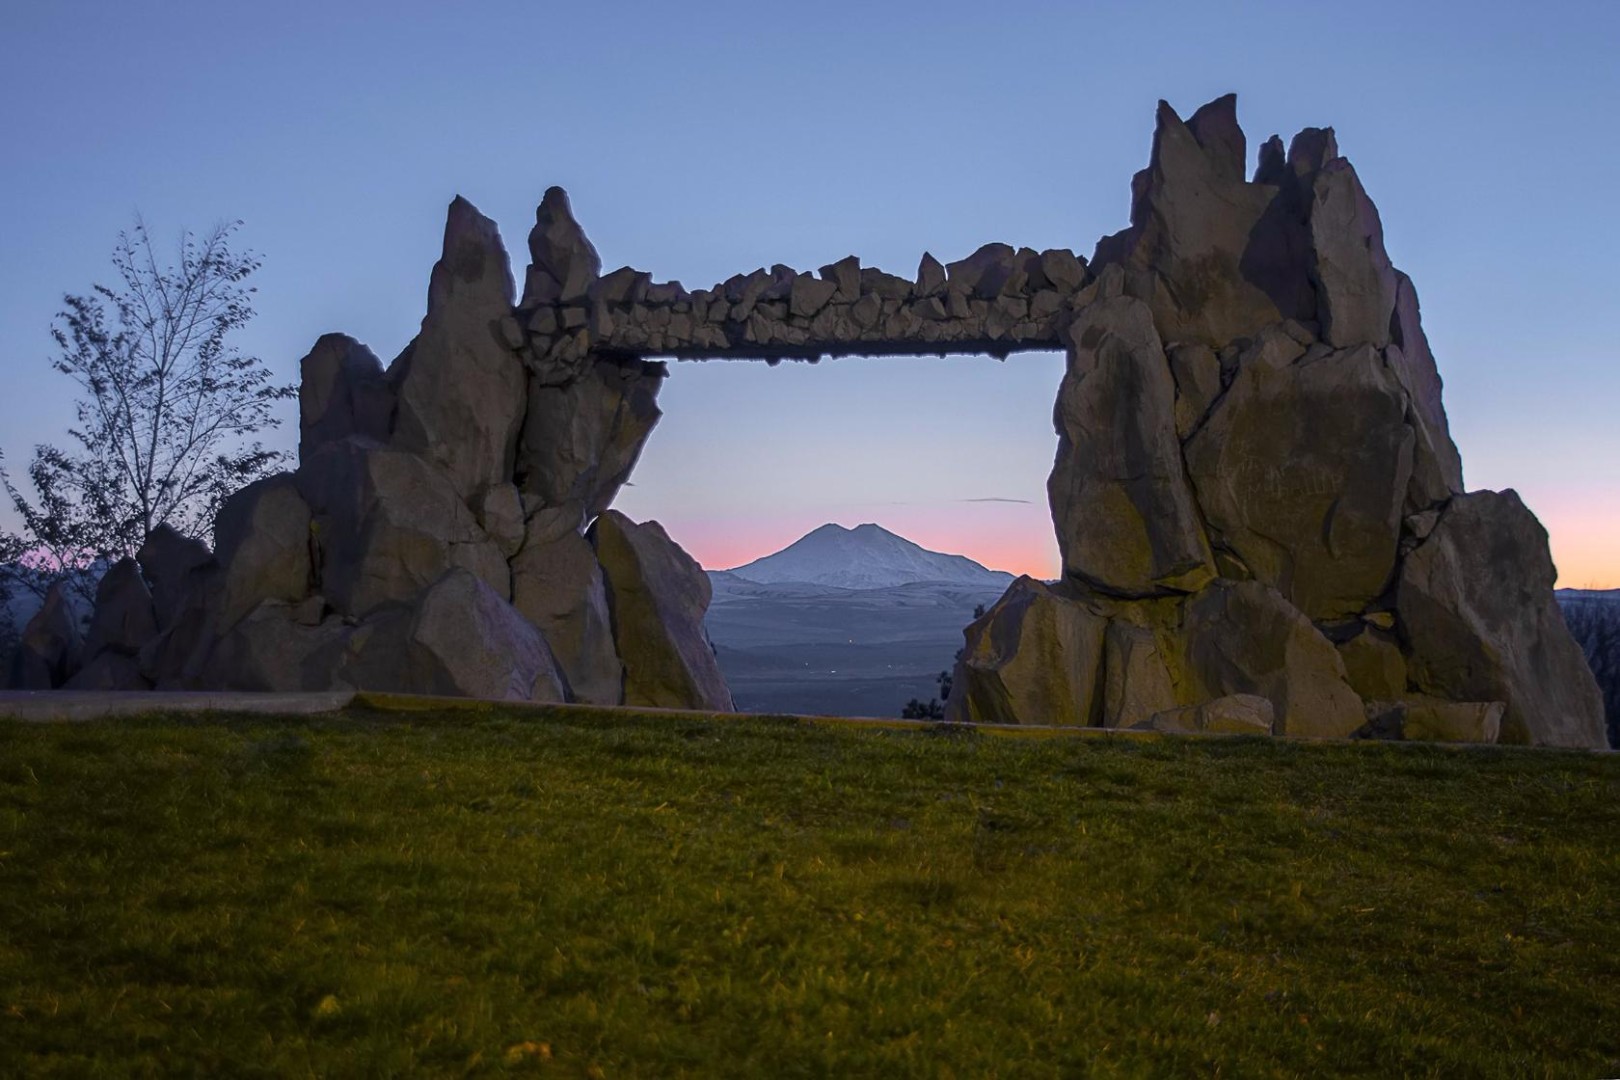 Гора Машук – символ Пятигорска, который всегда привлекает внимание путешественников